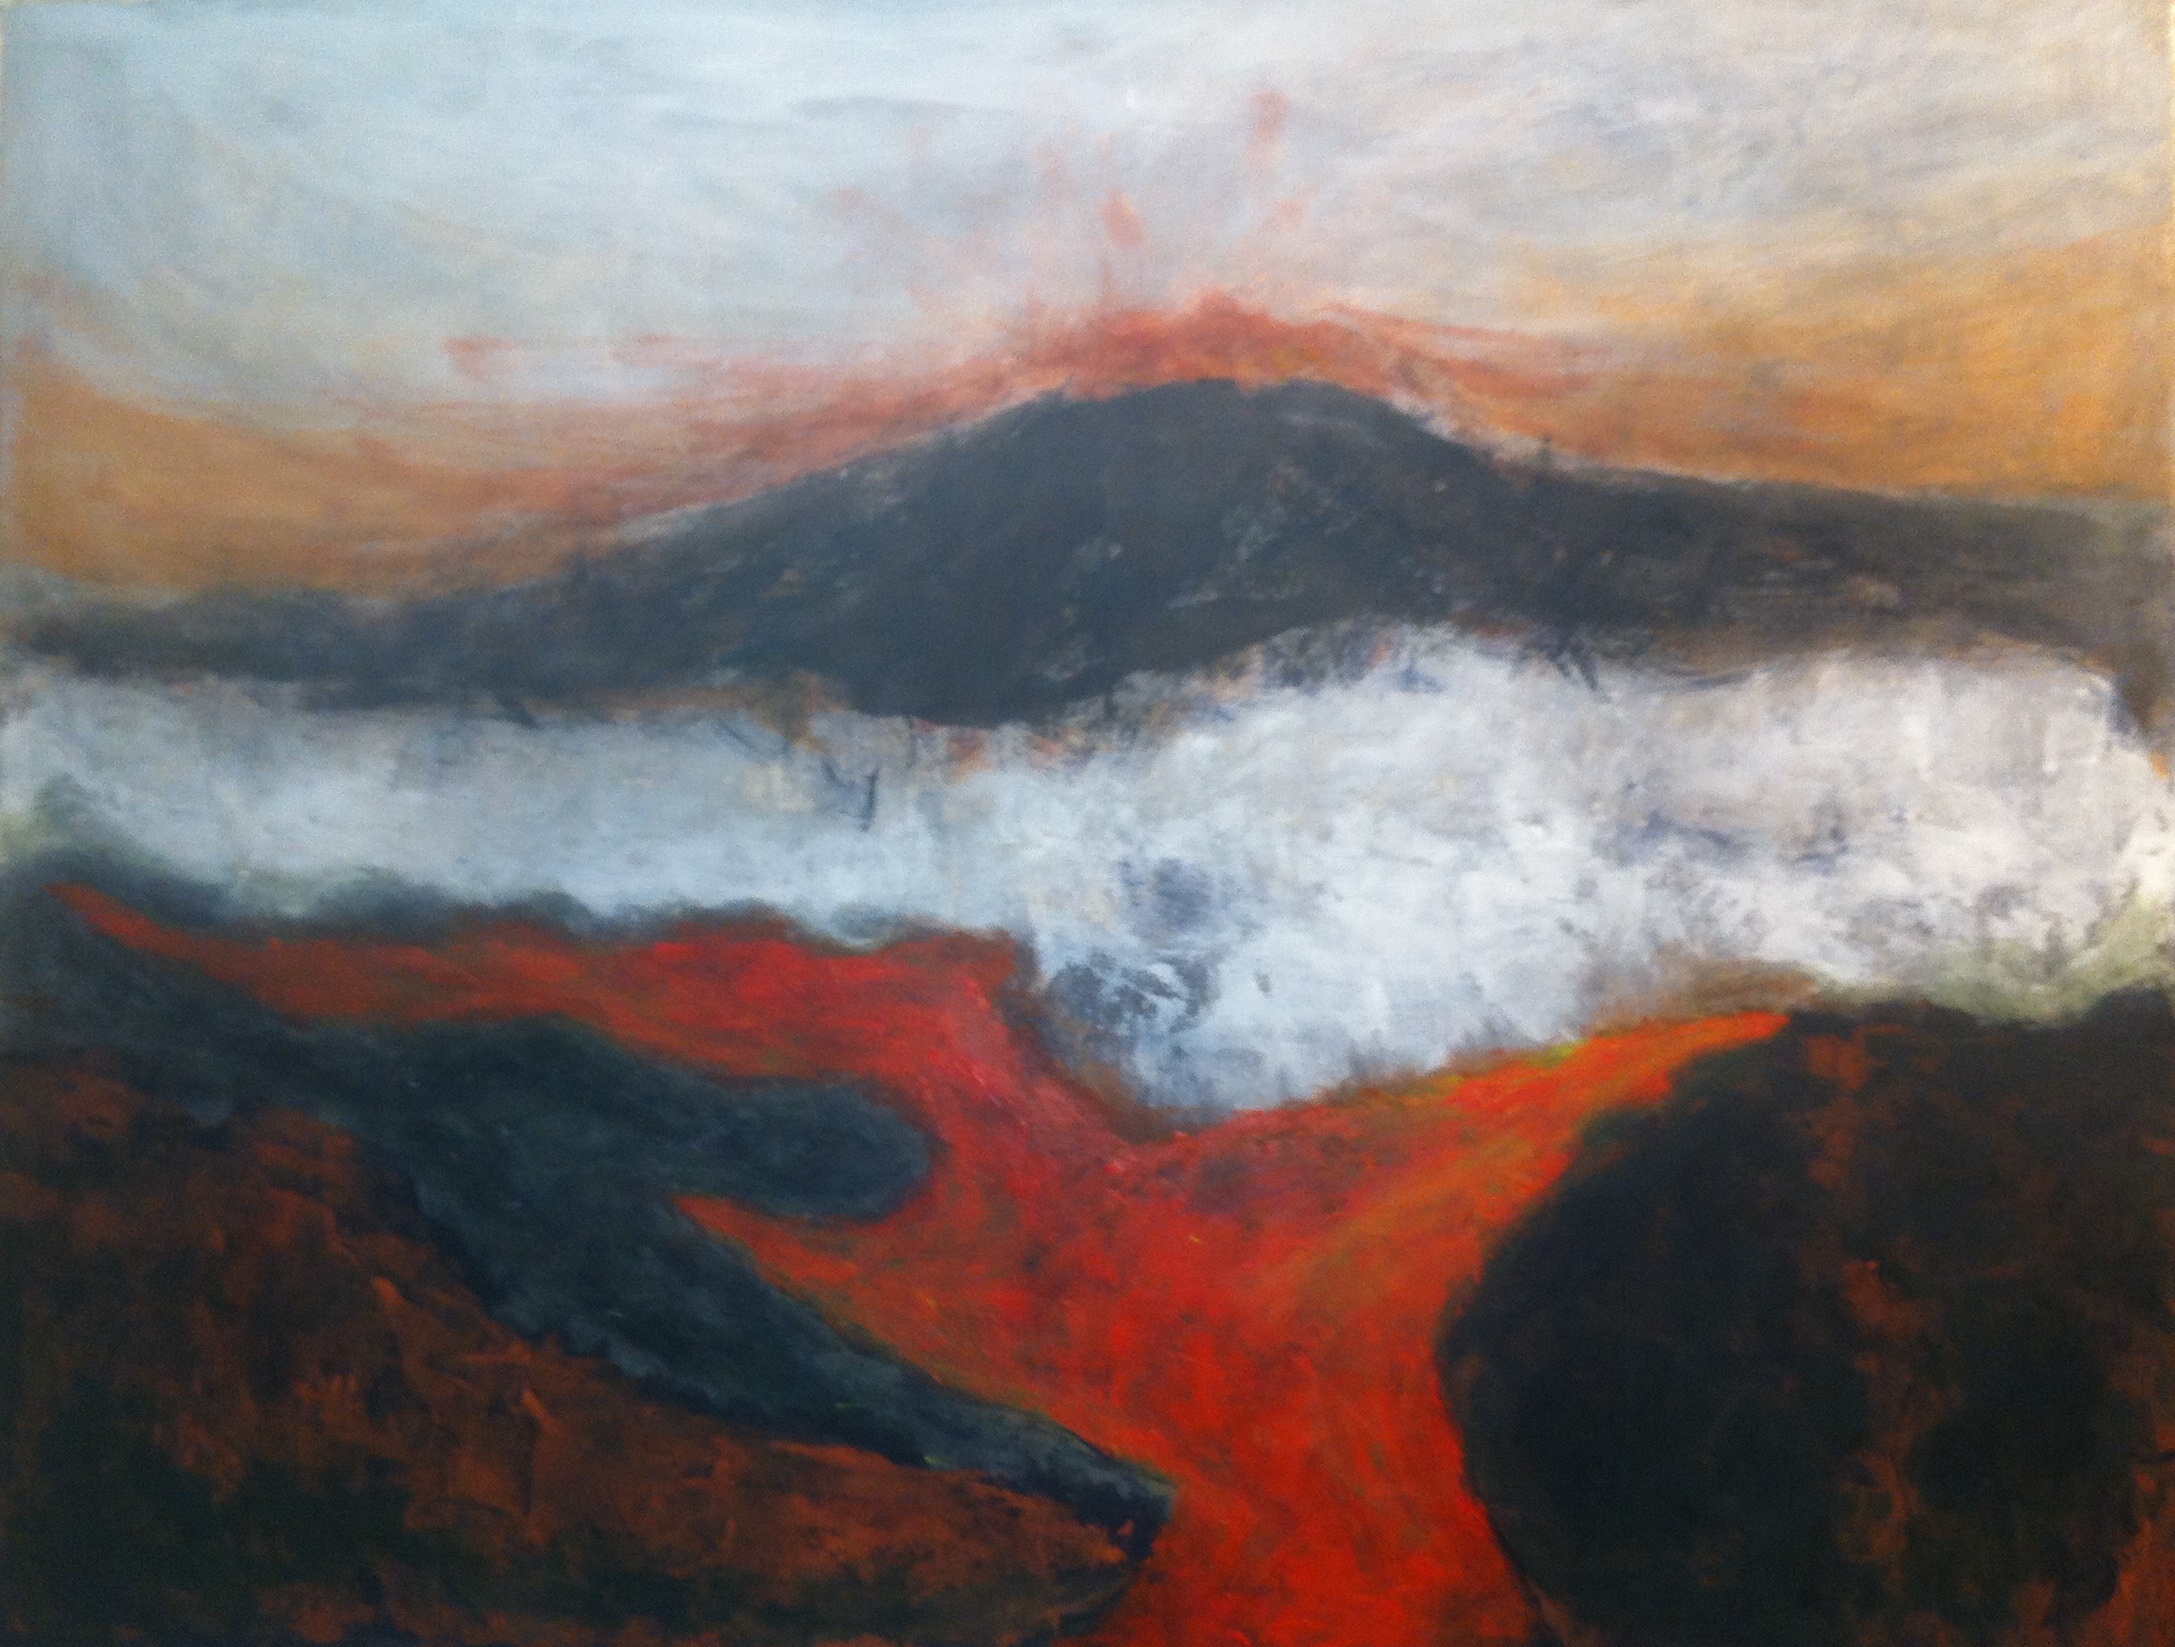 N° 1204 - Volcano - Acrylique sur toile - 89 x 116 cm - 25 février 2014